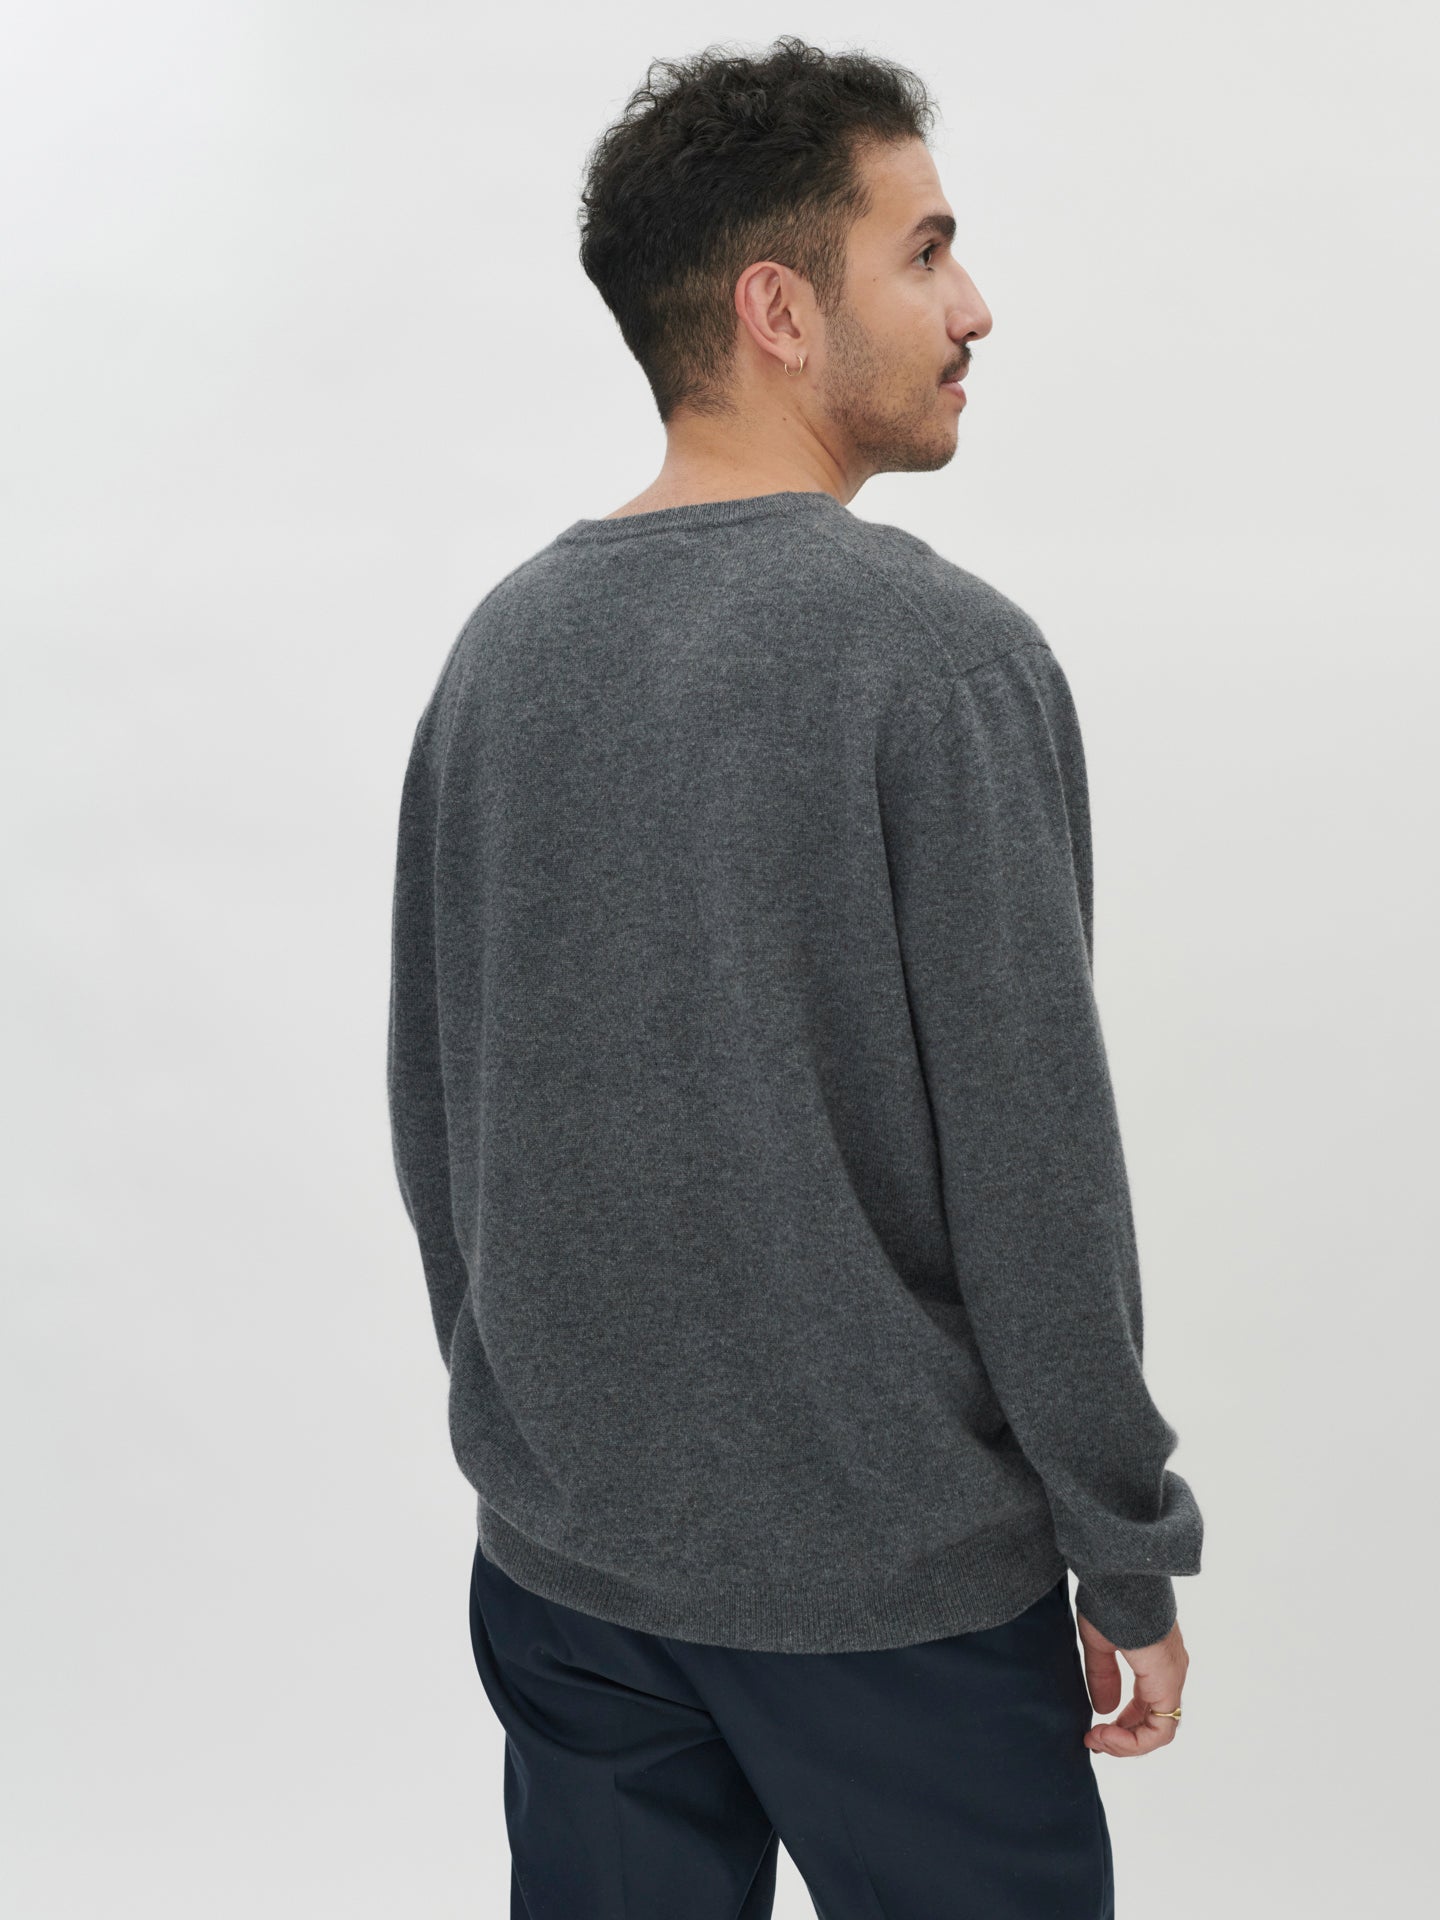 Men's Cashmere Basic V-Neck Sweater Plum Kitten - Gobi Cashmere